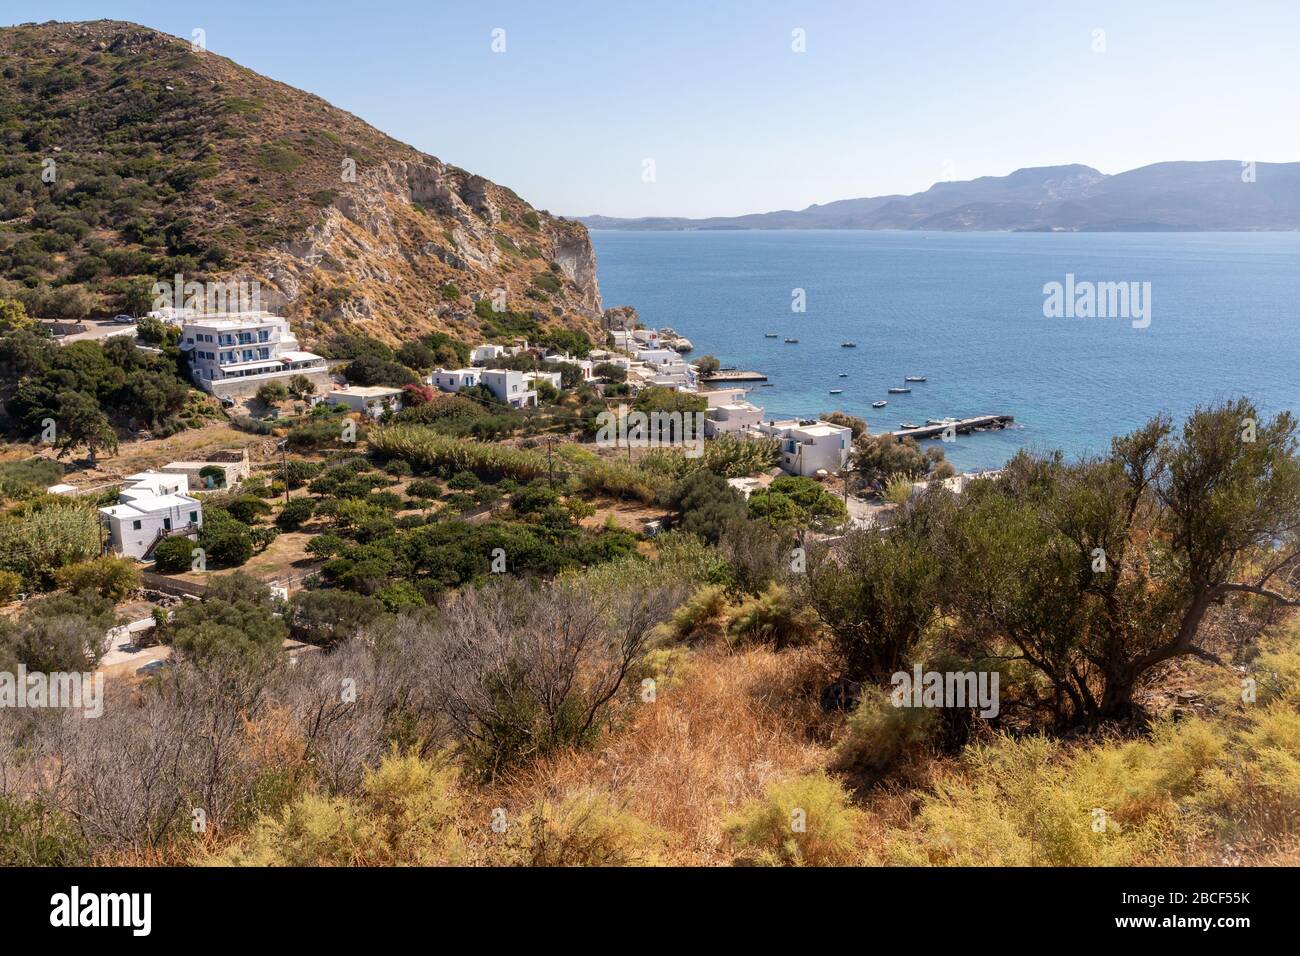 Bateaux et maisons à la plage de Klima, Milos, Grèce Banque D'Images